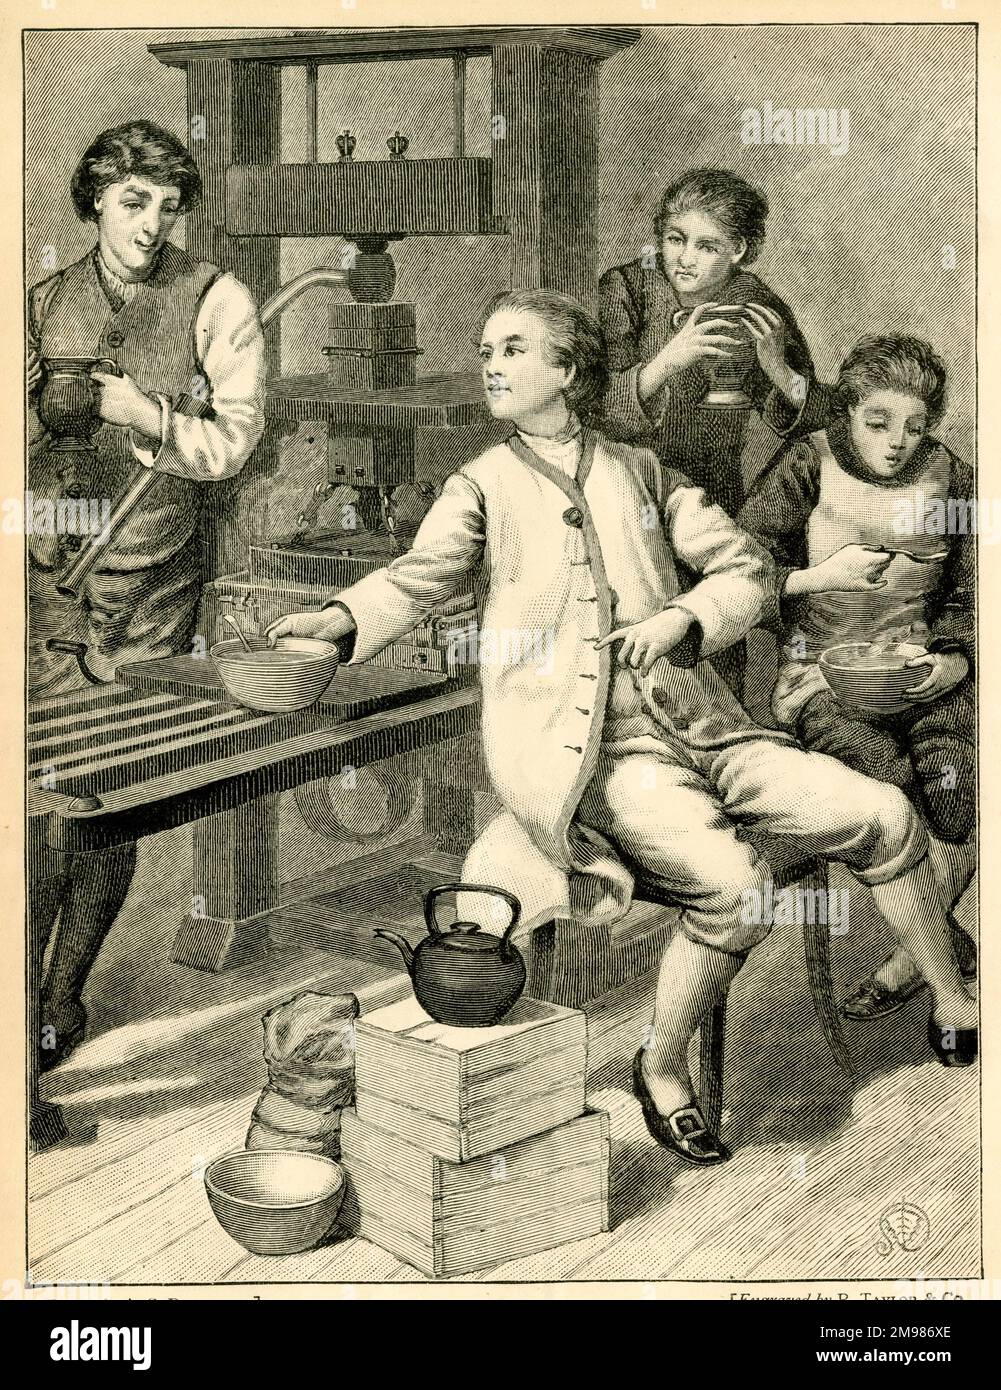 Ein Vorfall im Leben von Benjamin Franklin (1706-1790), als er als junger Mann in der Druckerei arbeitete. Stockfoto